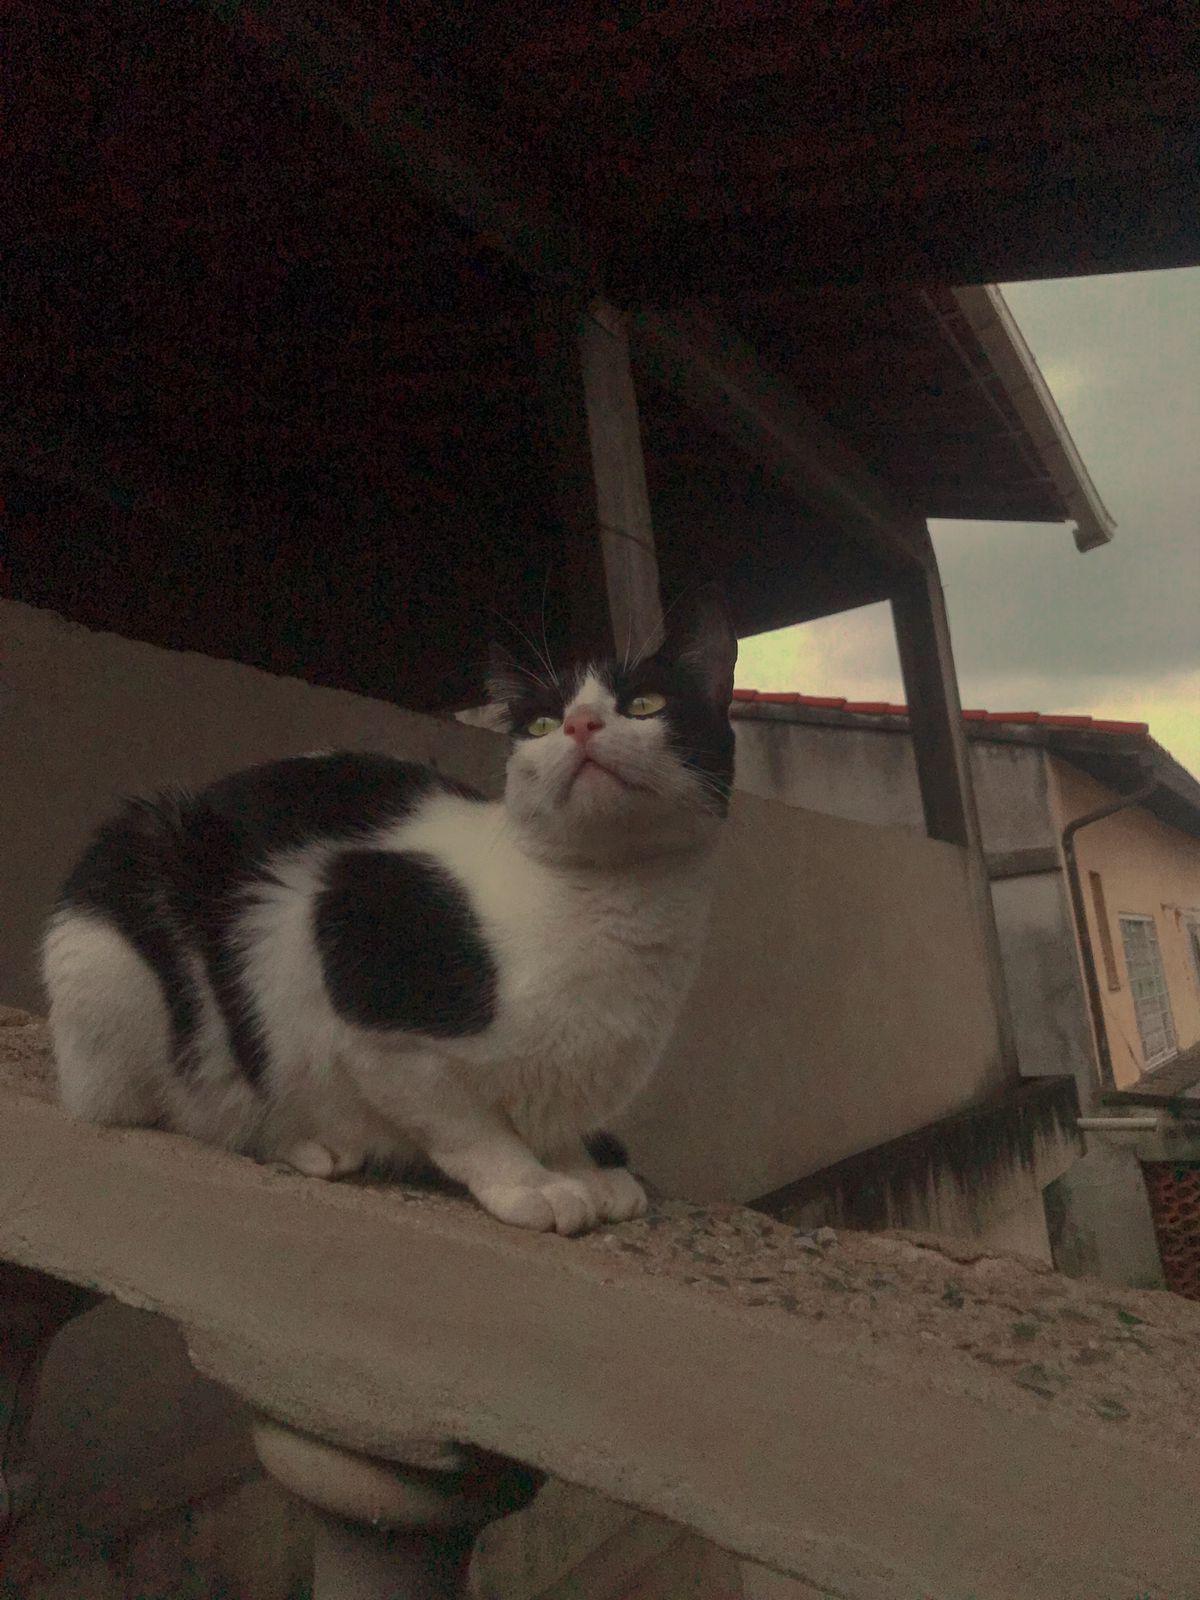 Um felino de pelagem branca com preta sentado sobre as quatro patas em cima do corrimão de uma escada no alto olhando por cima da câmera com uma casa compondo a paisagem atrás